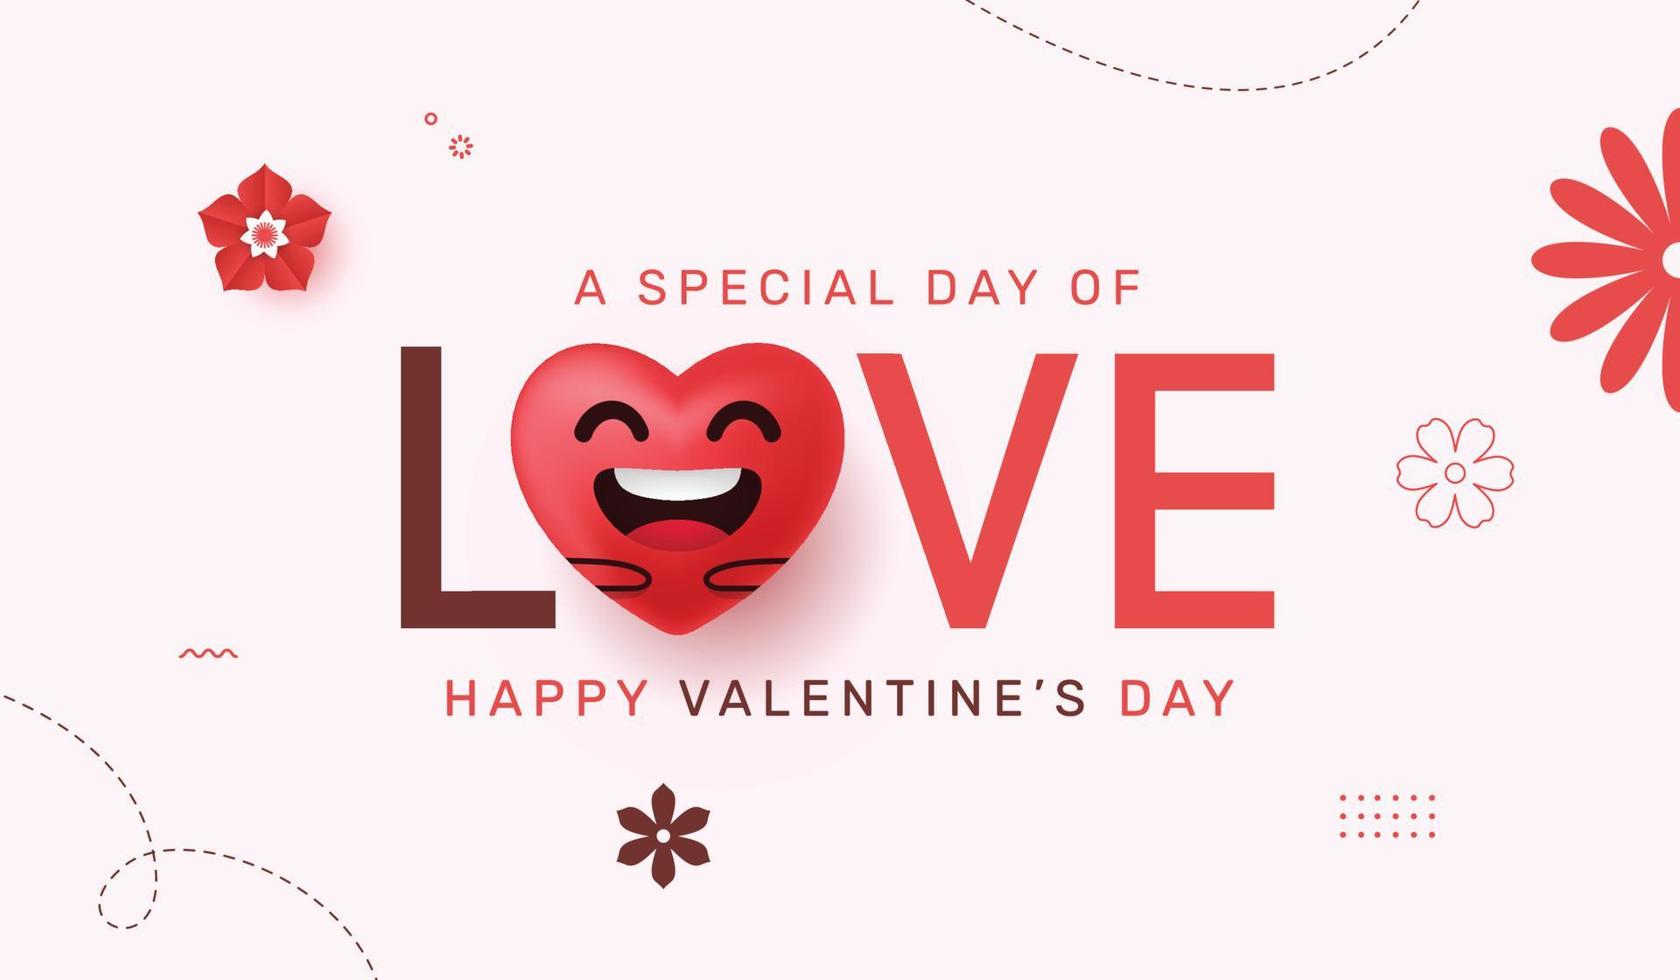 Liebesbeschriftung mit realistischem Herzen. Happy Valentines Day Text Illustration, Typografie-Design für Grußkarten, Banner, Poster vektor